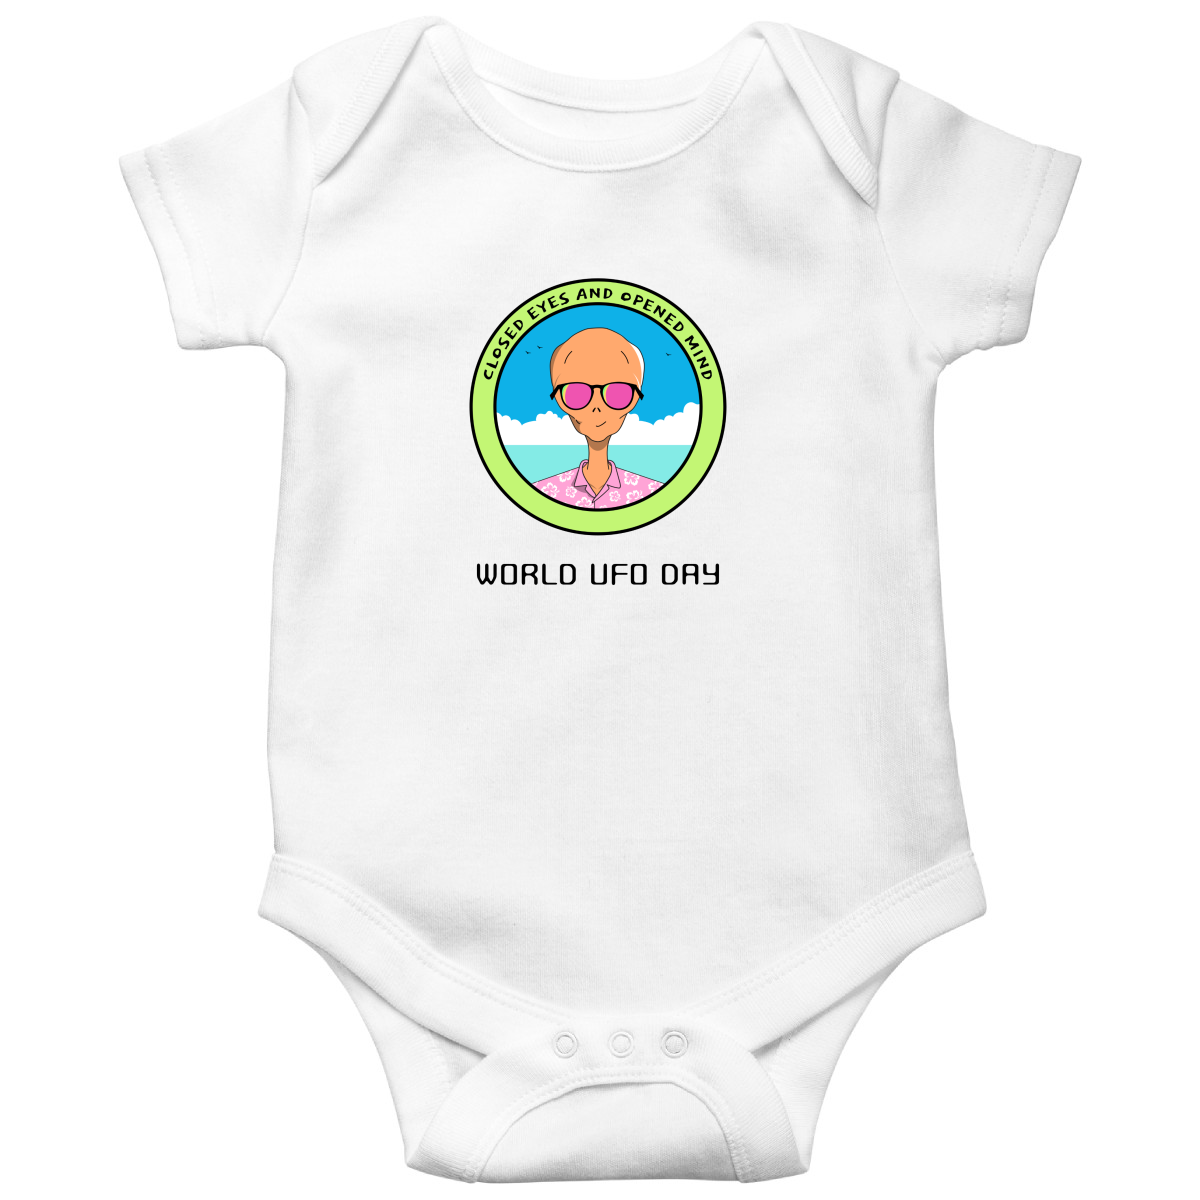 World UFO Day Baby Bodysuits | White